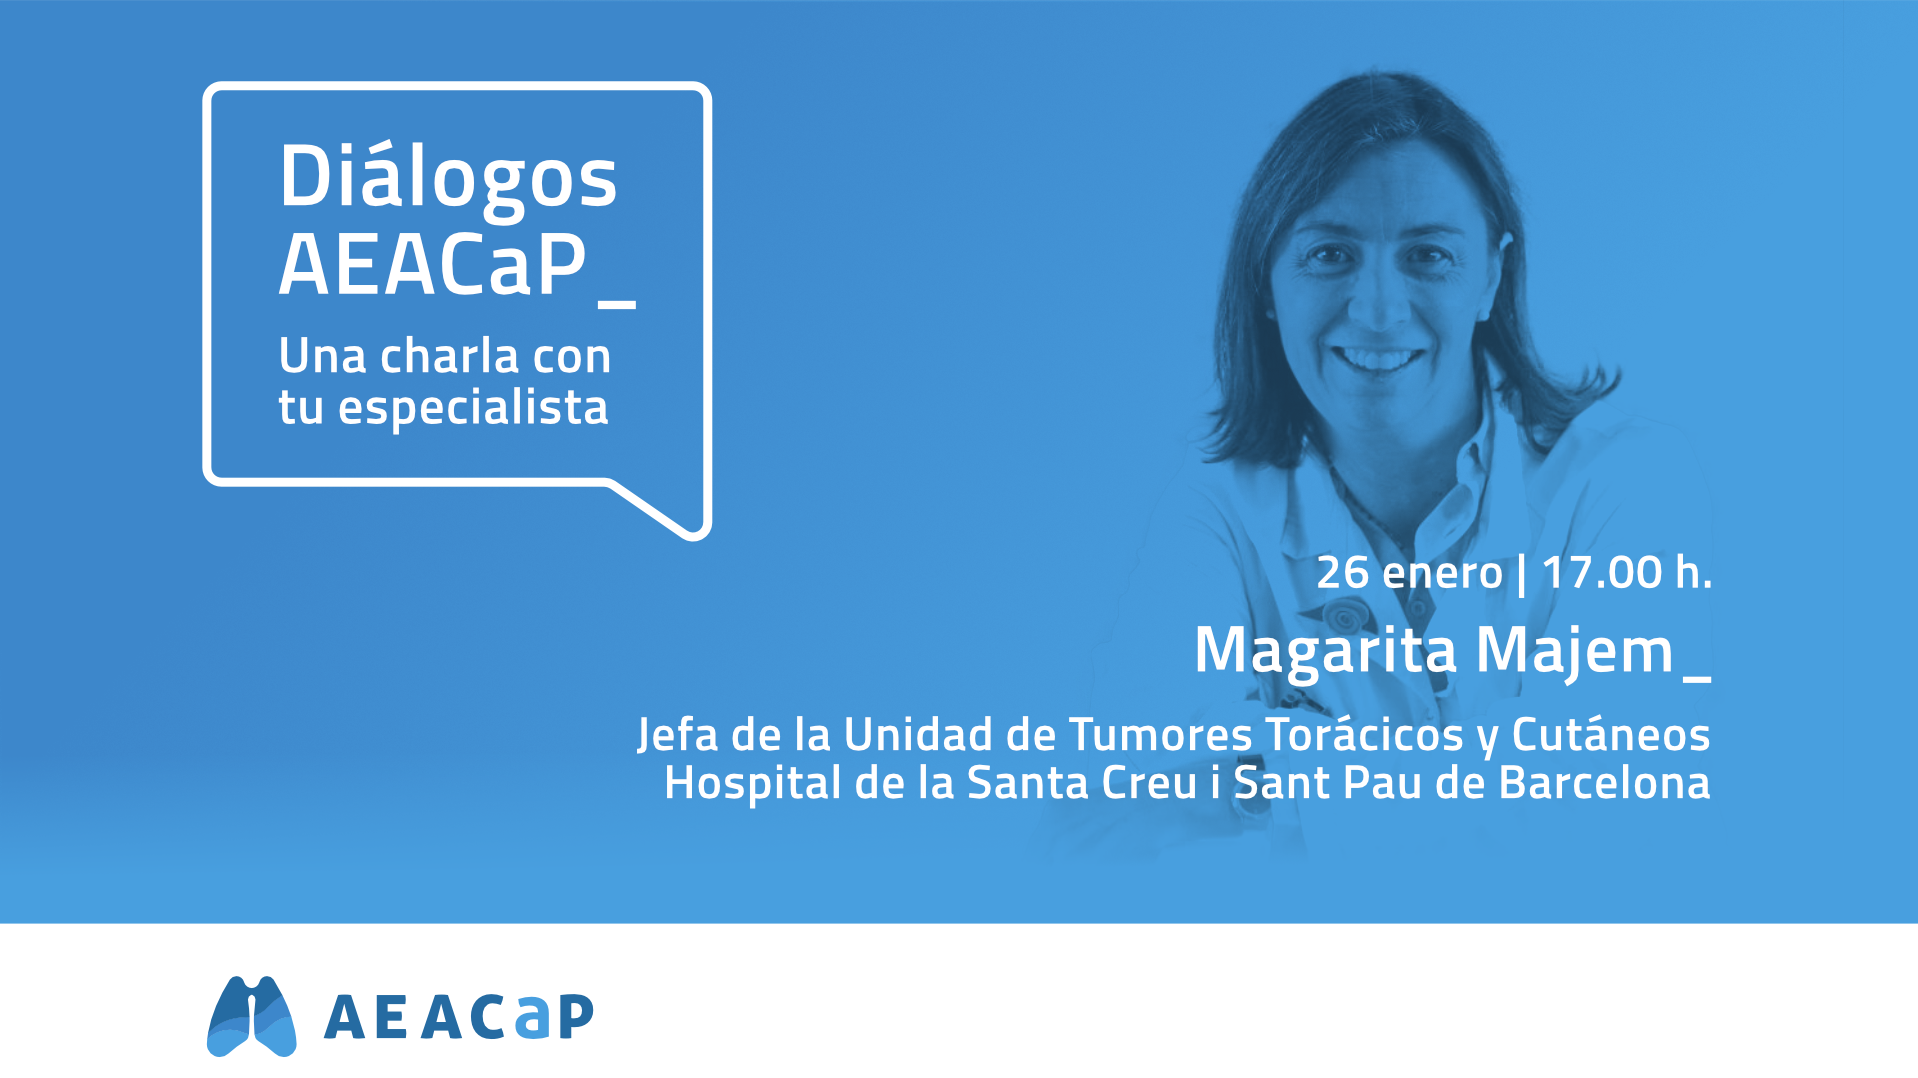 "Diálogos AEACaP" - Ayuda para pacientes afectados por cáncer de pulmón